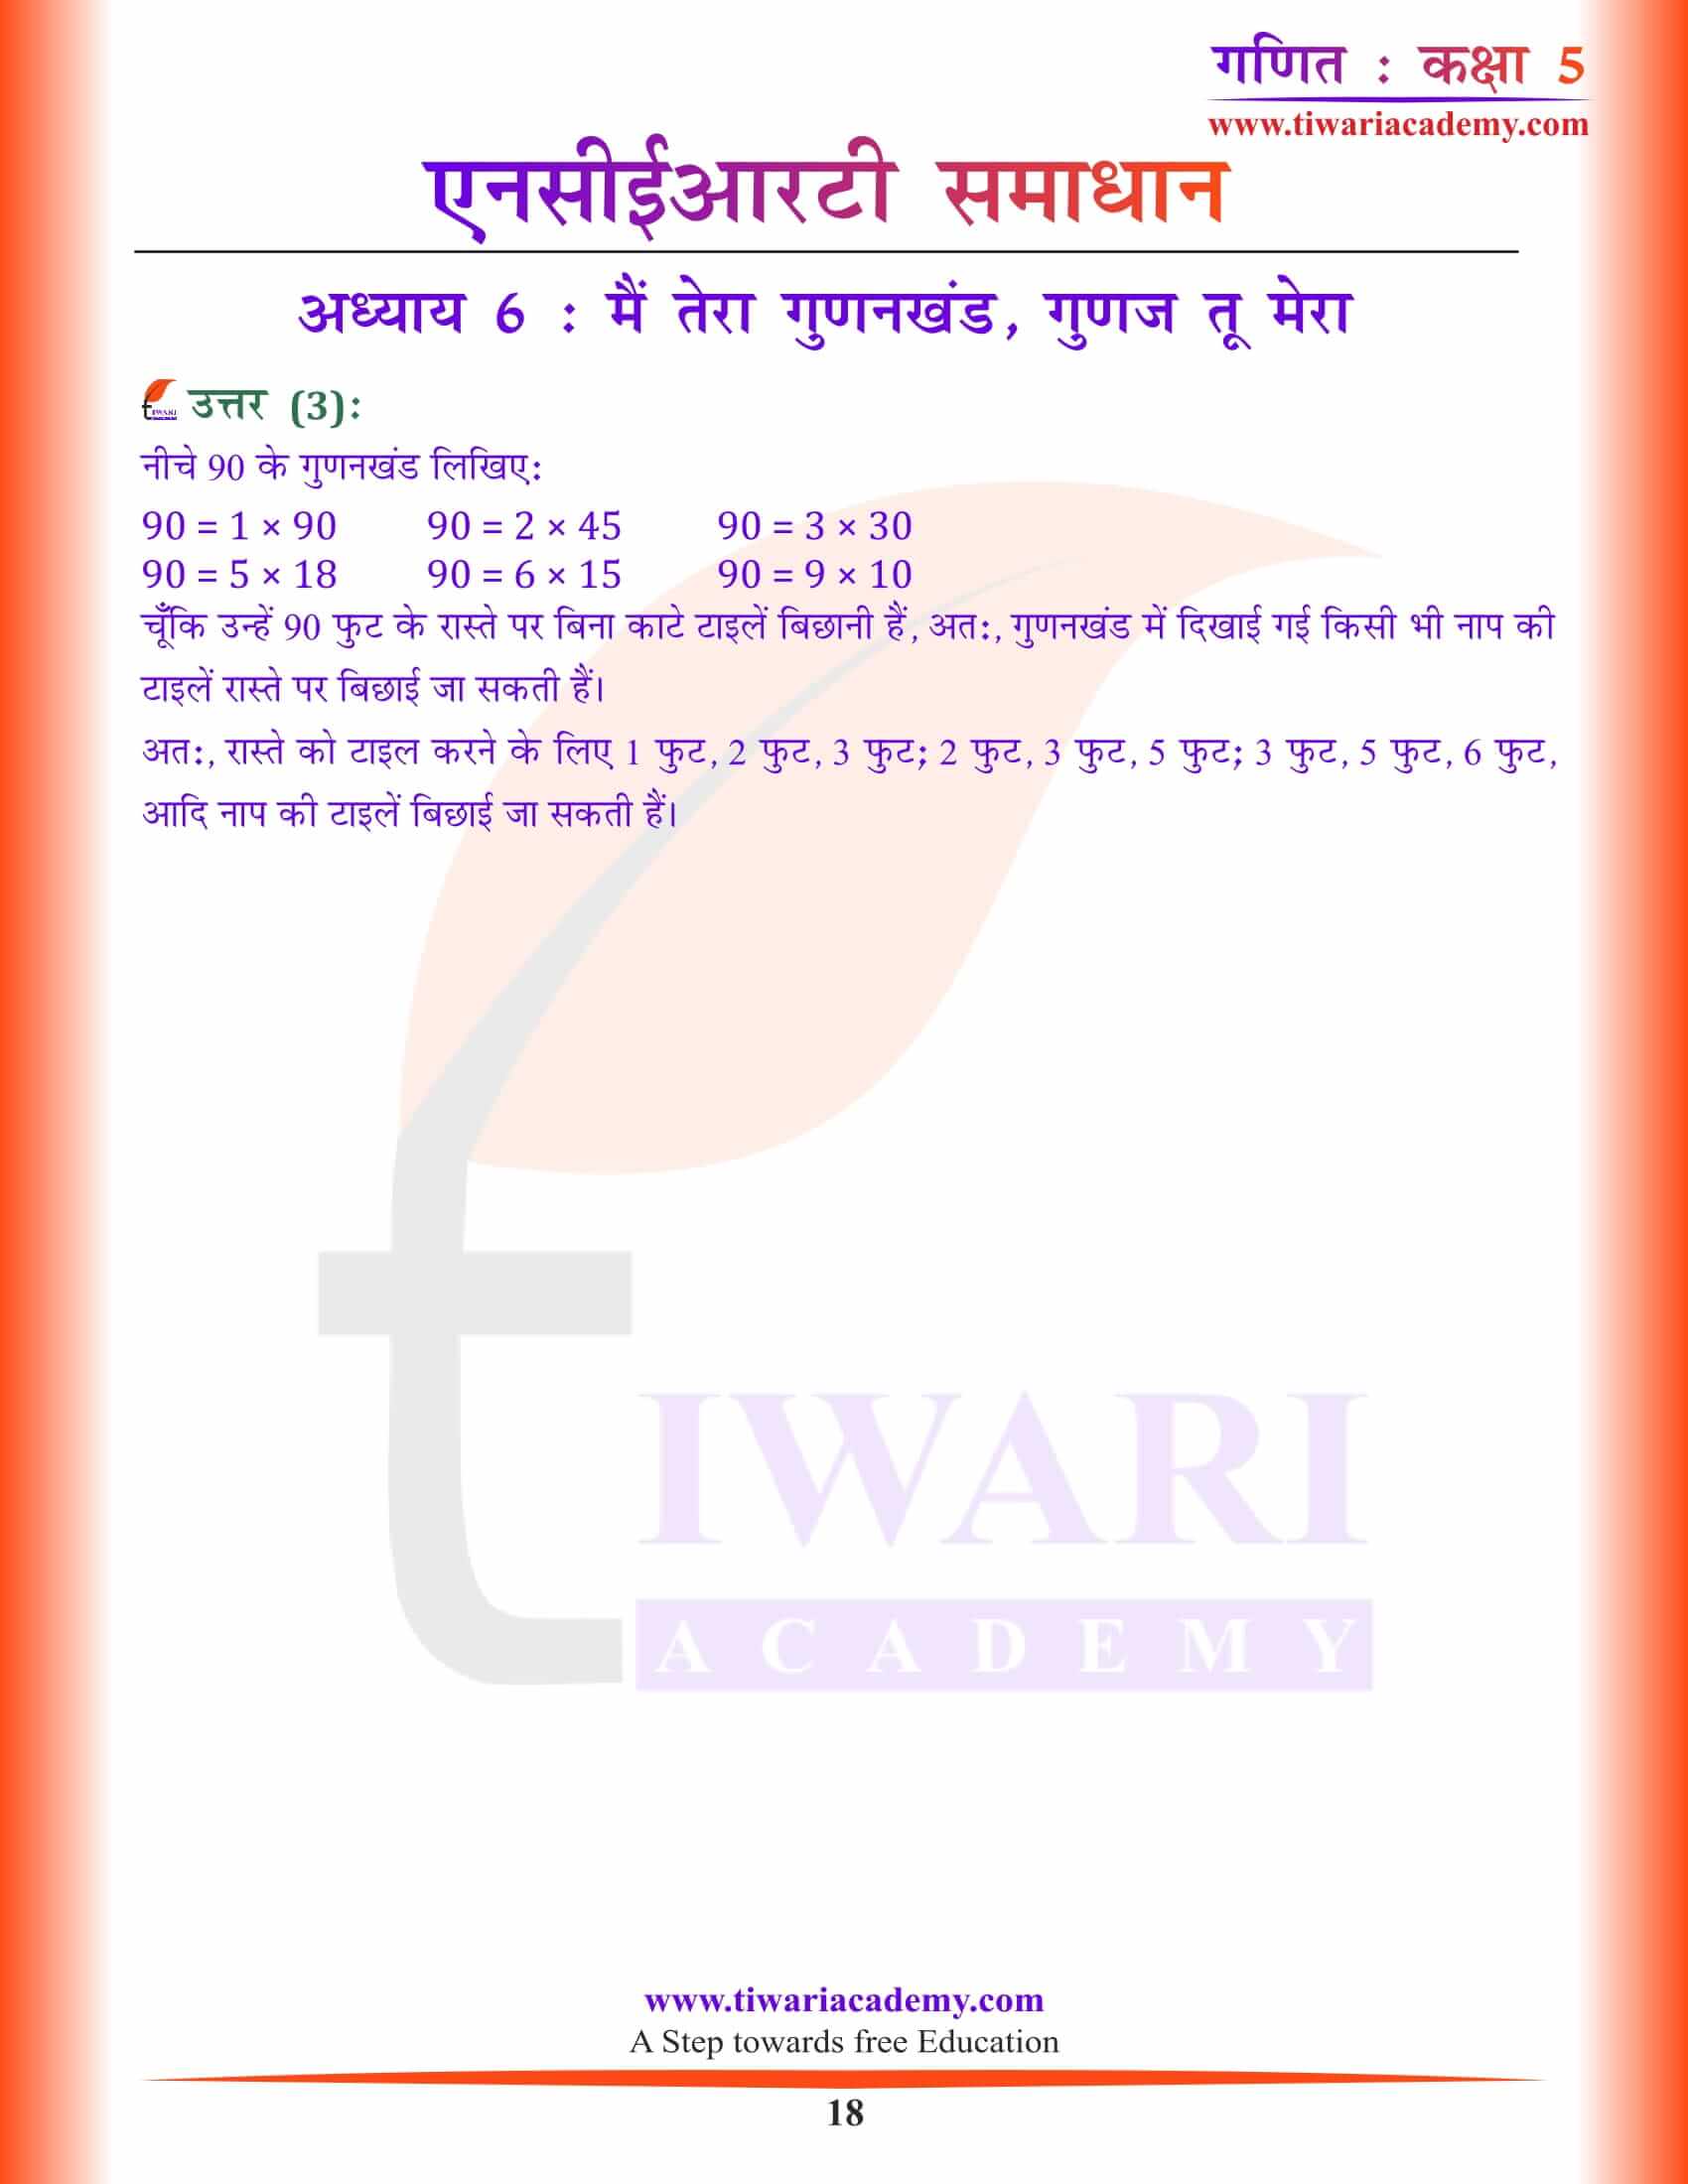 कक्षा 5 गणित अध्याय 6 हिंदी मीडियम समाधान